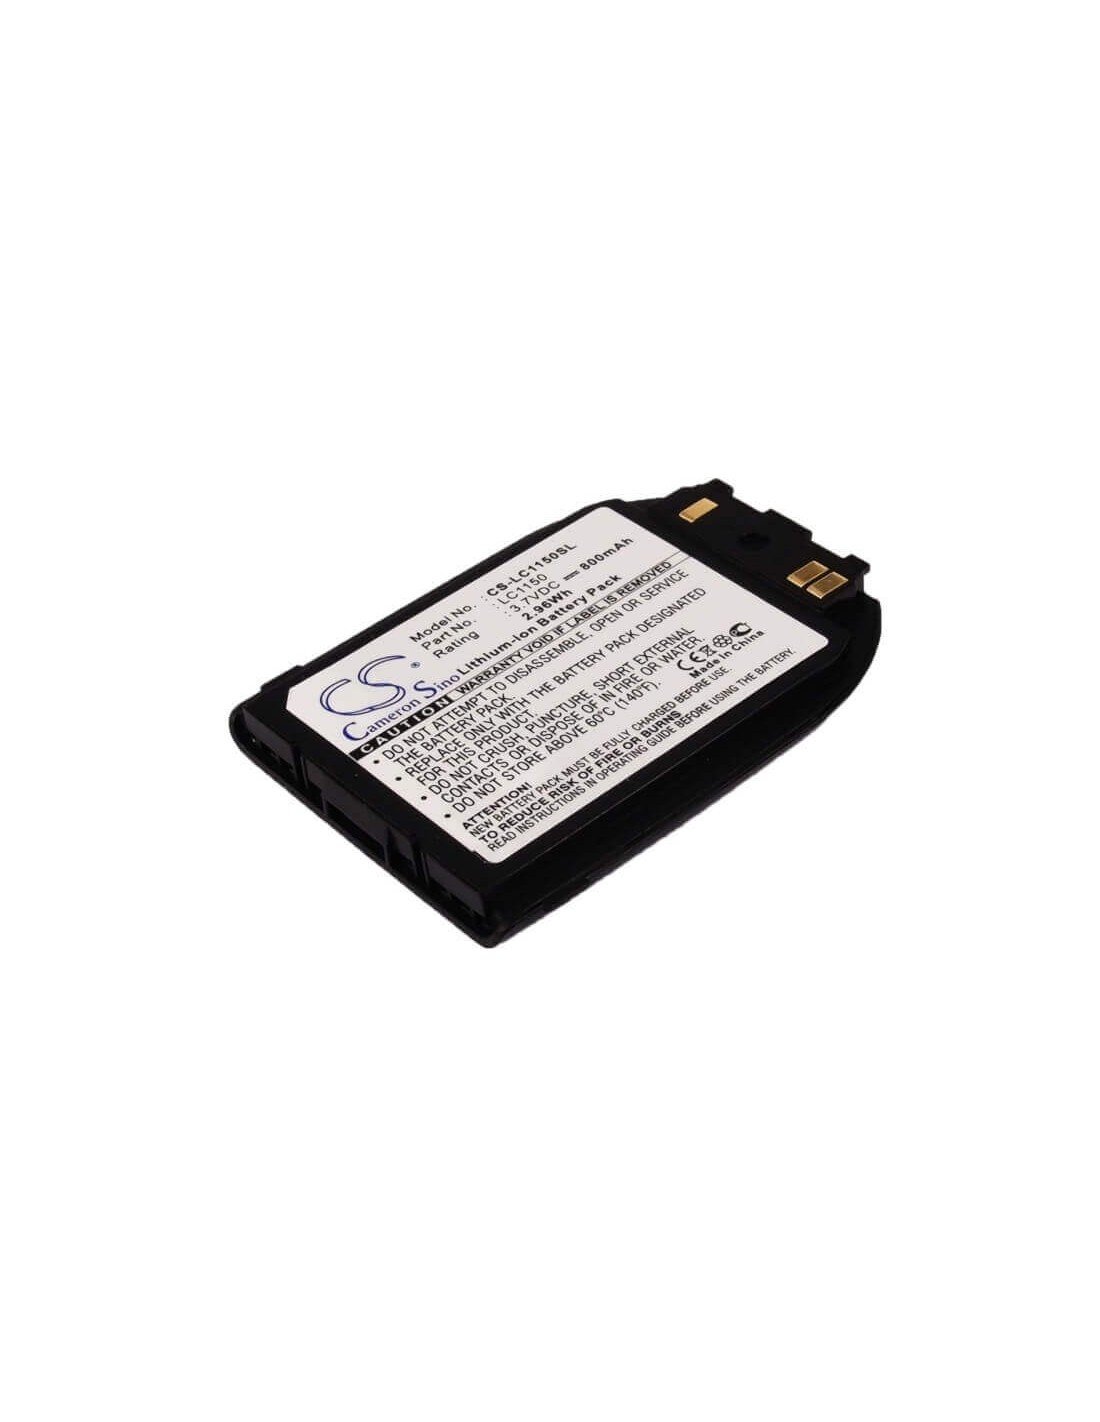 Battery for LG C1150 3.7V, 800mAh - 2.96Wh